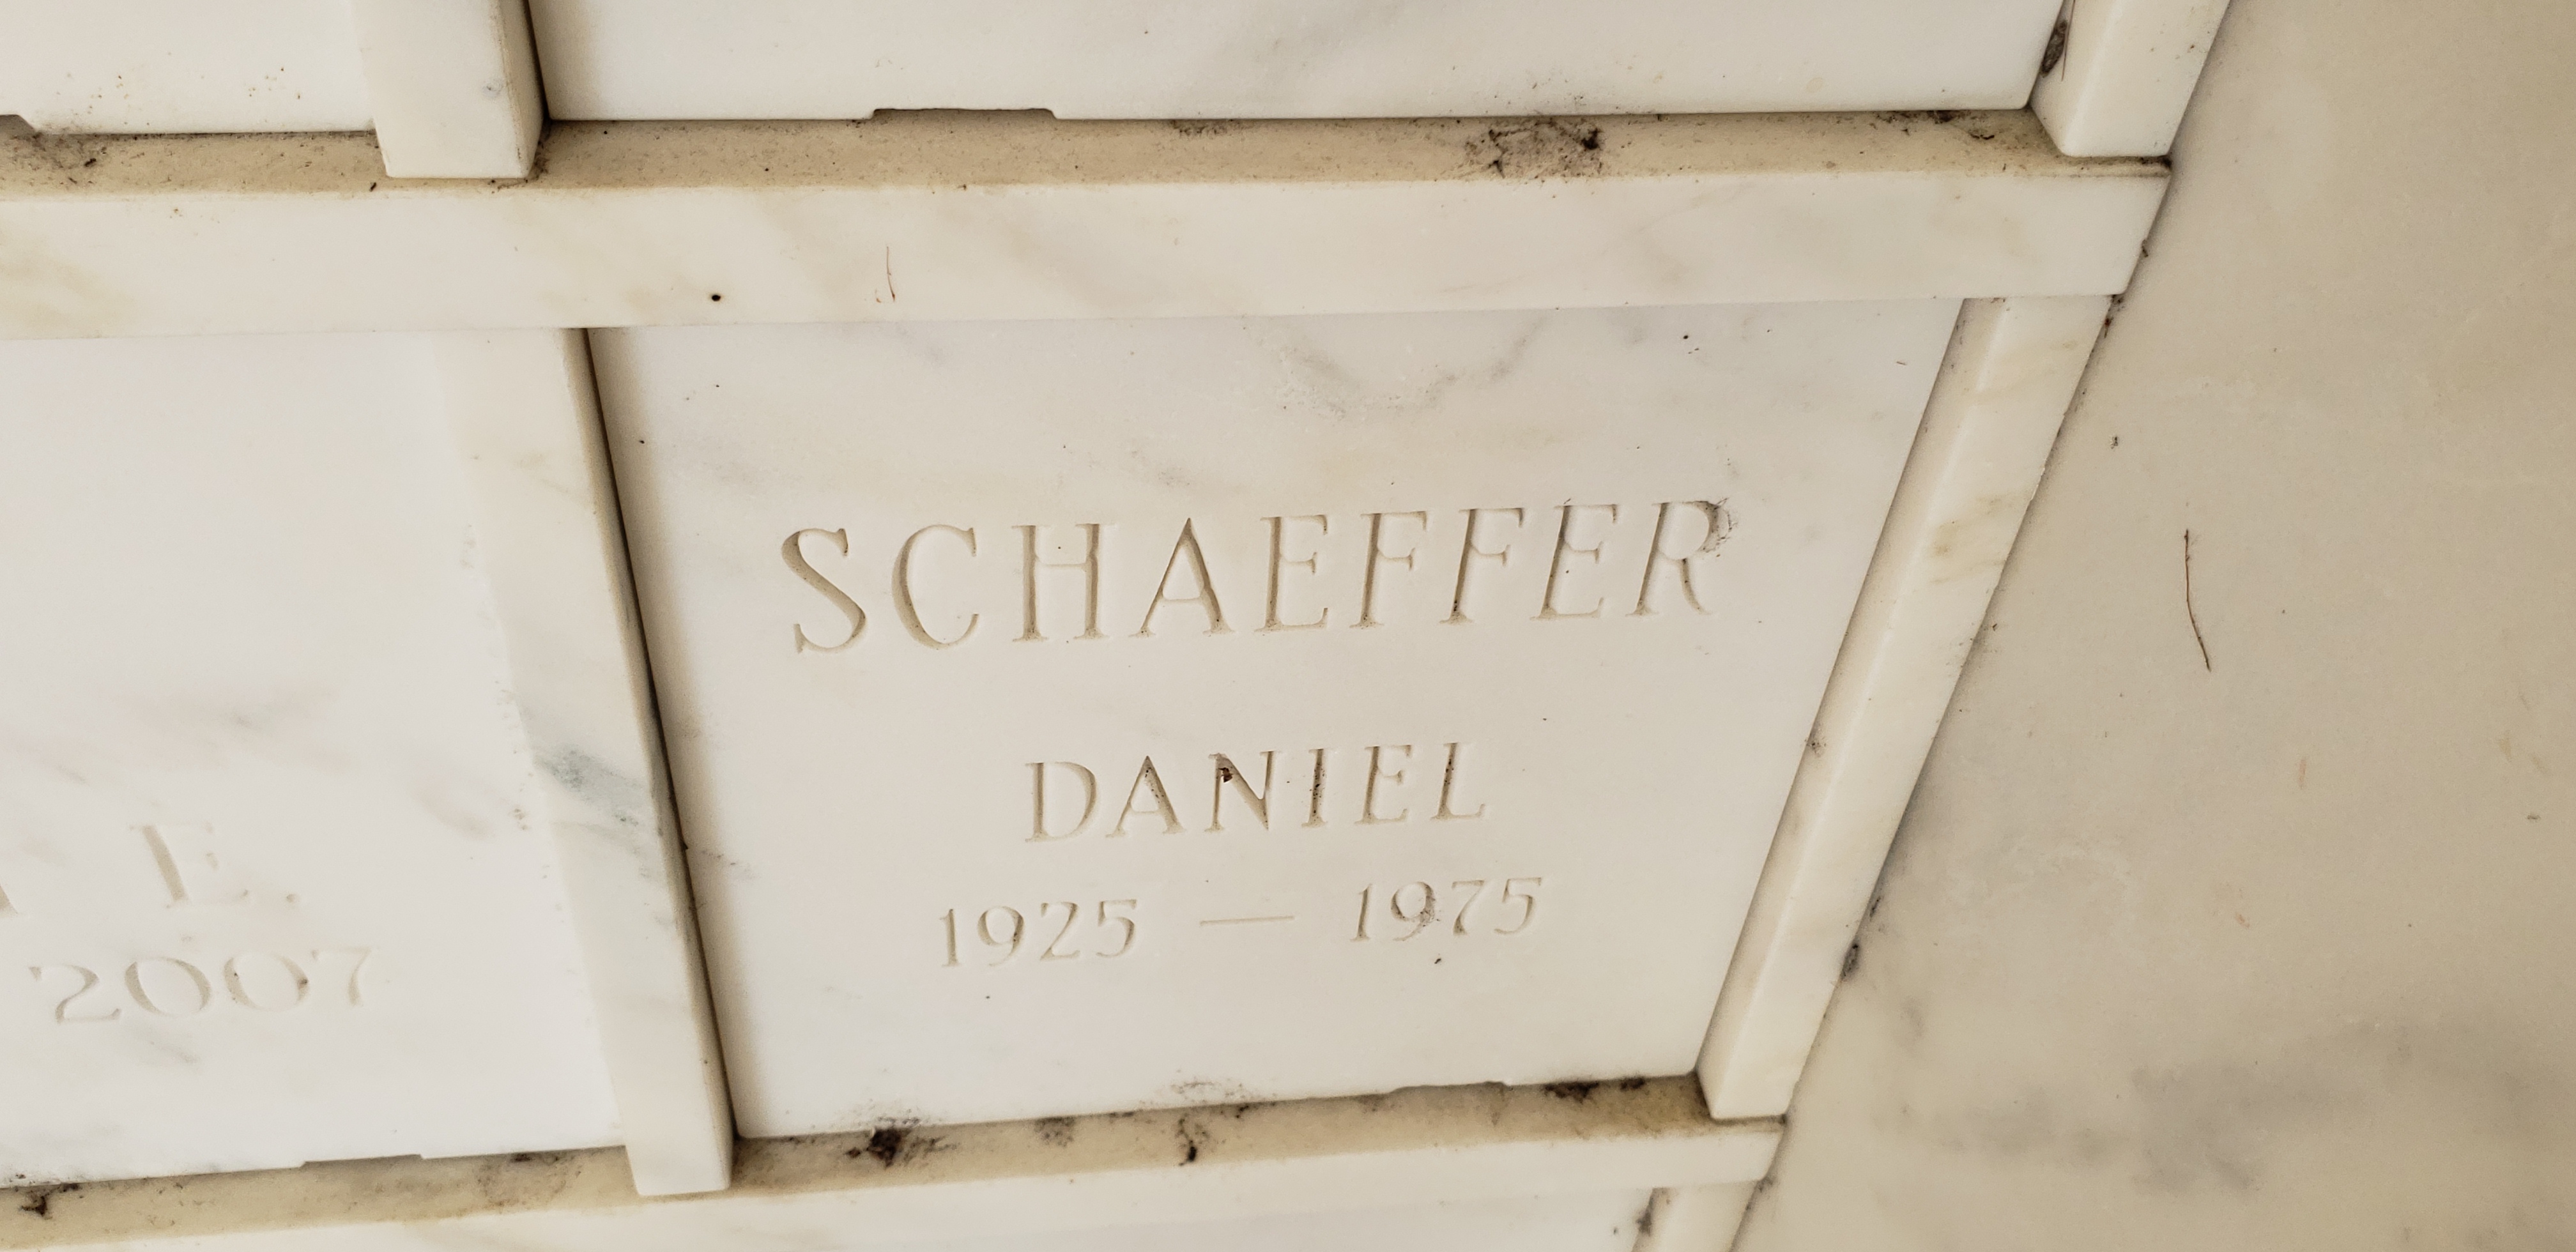 Daniel Schaeffer